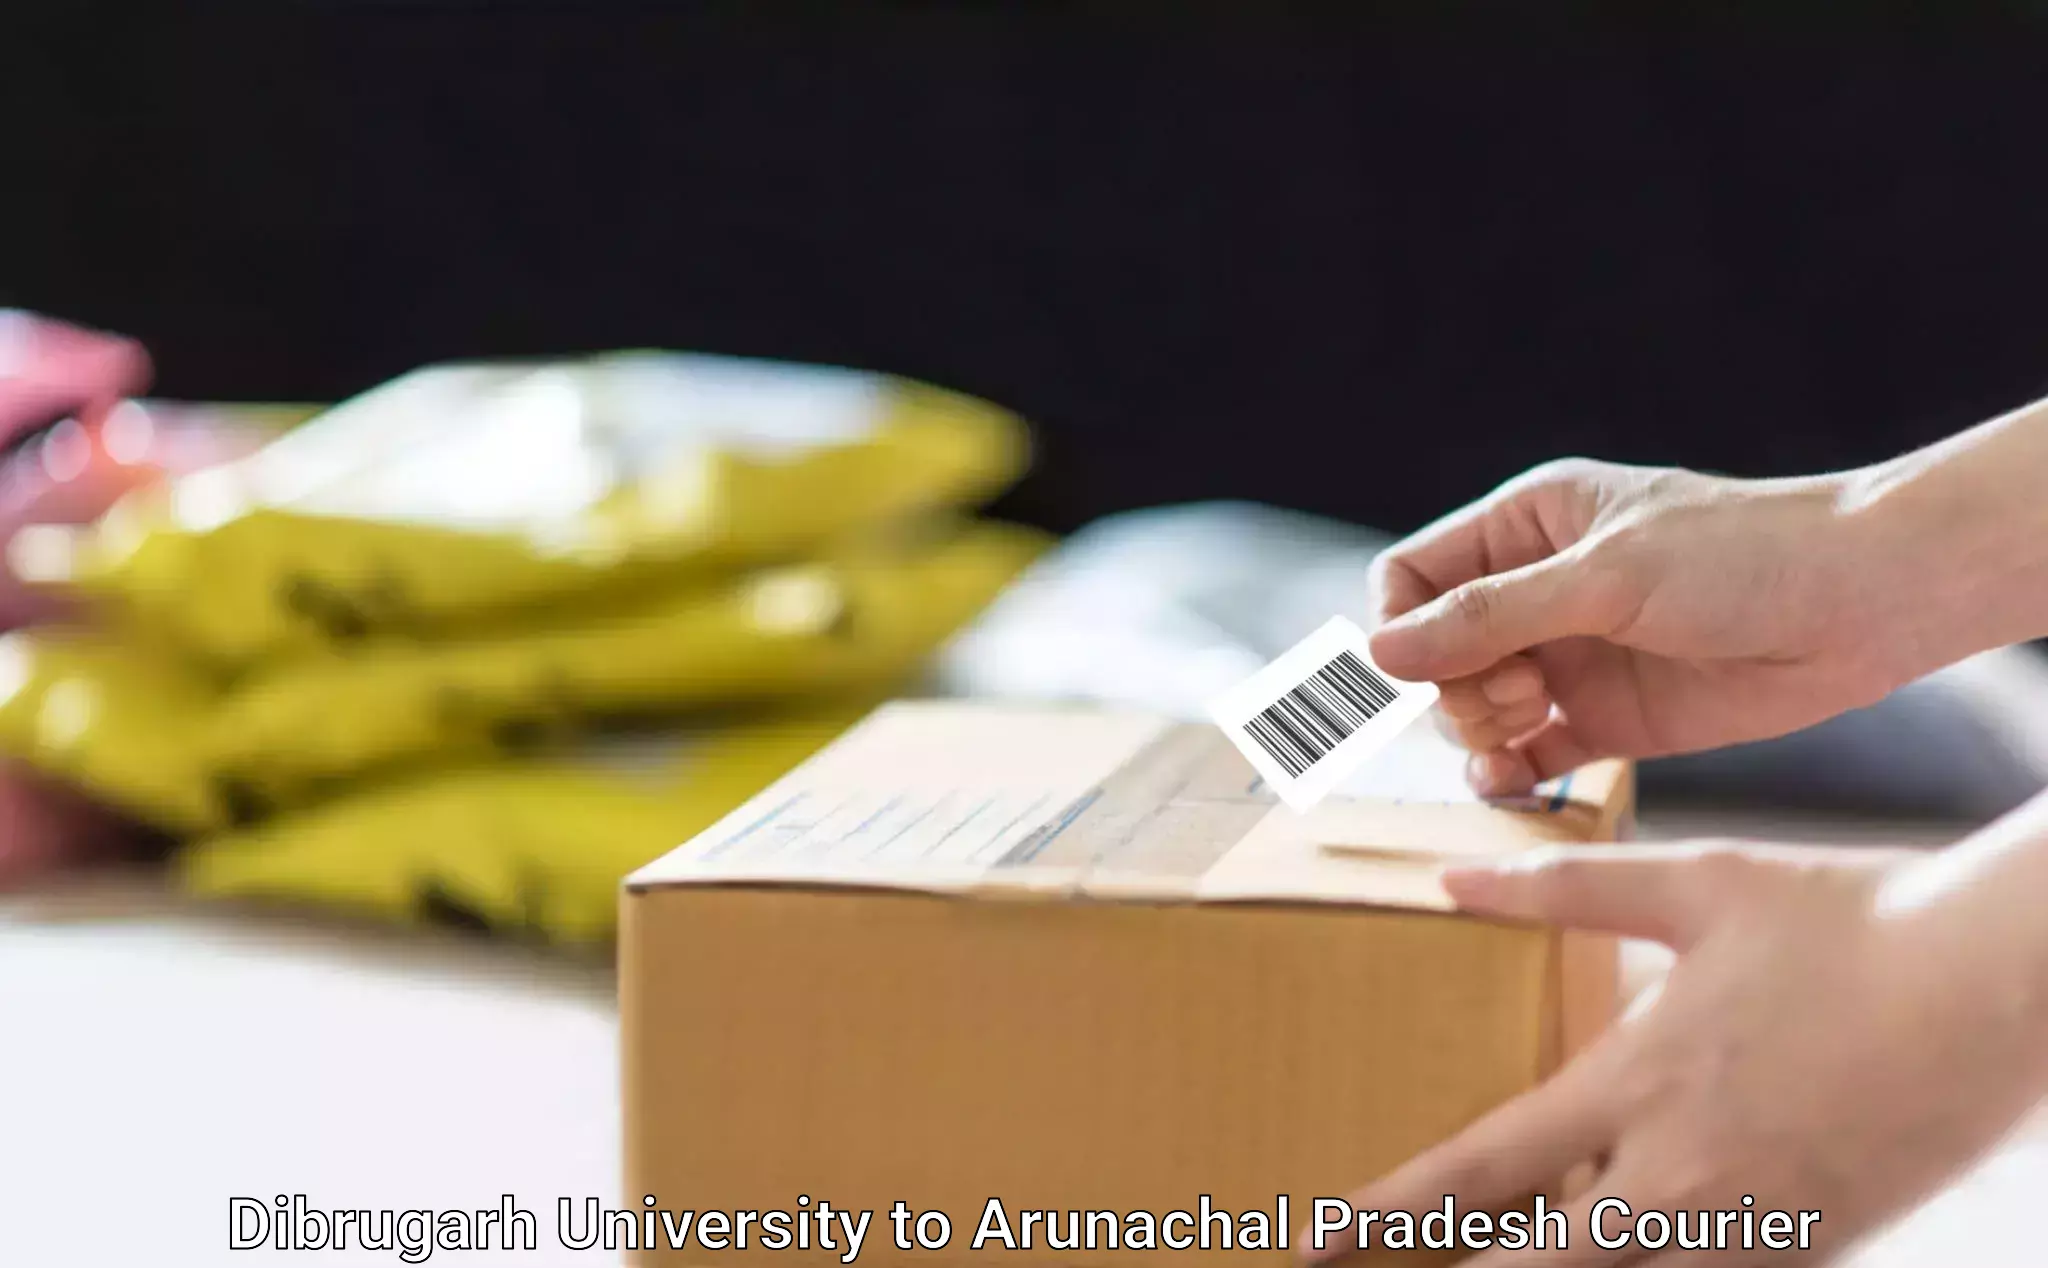 Online courier booking Dibrugarh University to Arunachal Pradesh